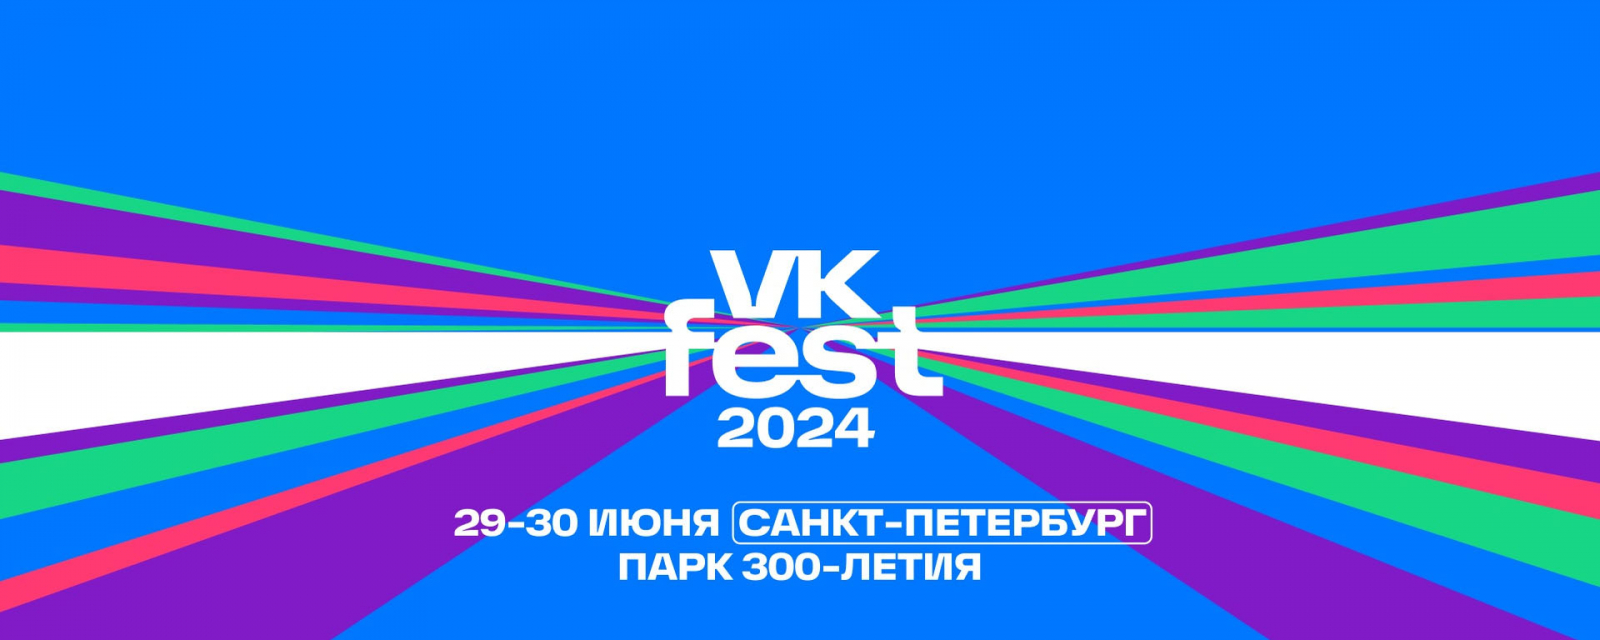 VK Fest 2024 в Санкт-Петербурге